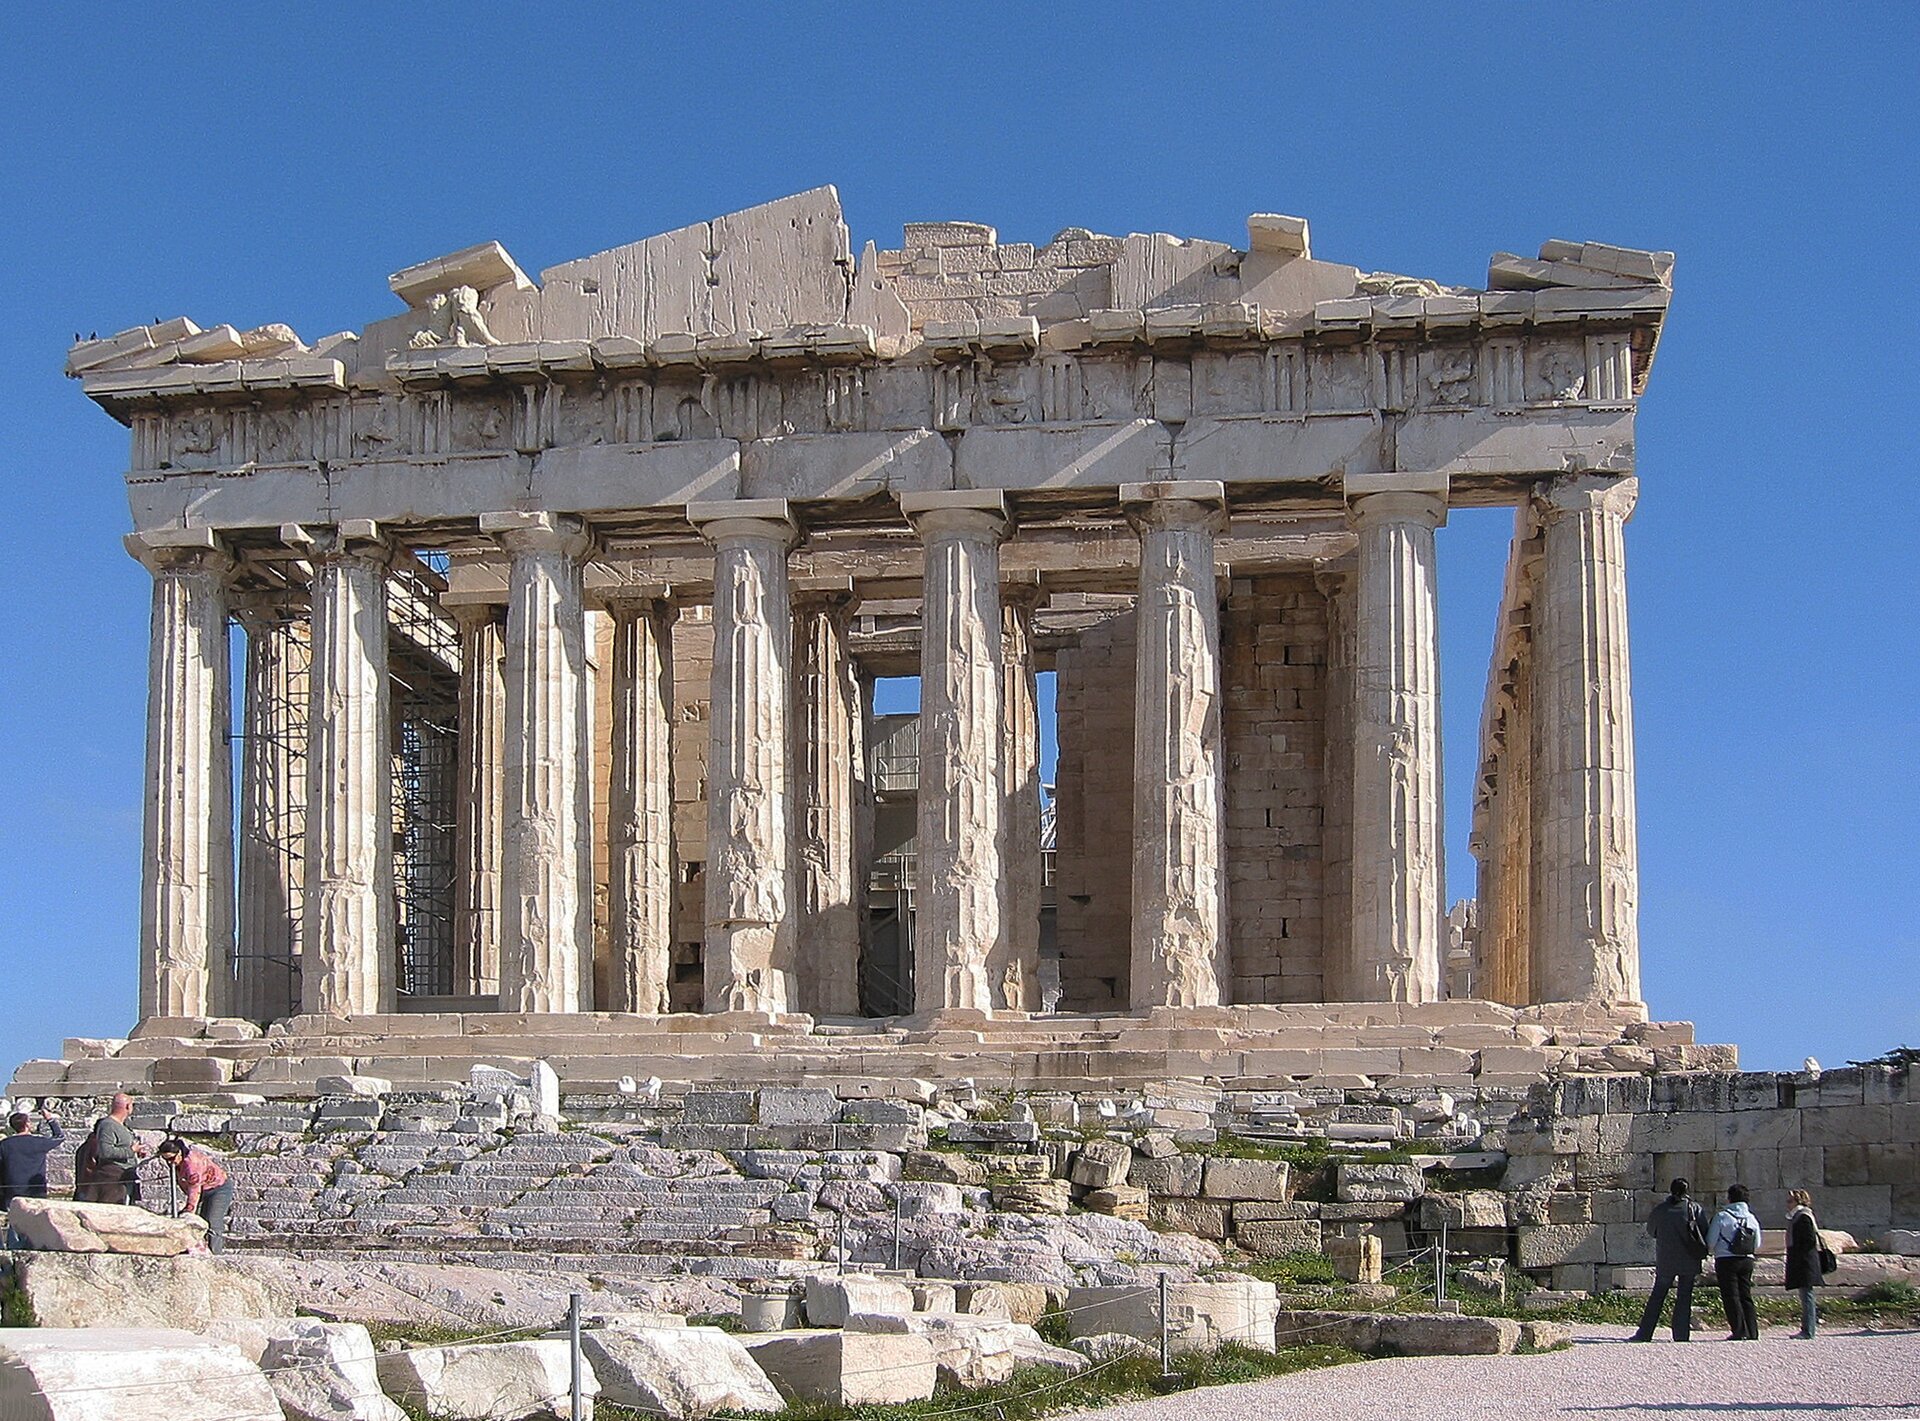 Fotografia nieznanego autora przedstawia widok na Partenon – świątynię poświęconą bogini Atenie. Budynek został zbudowany z jasnych cegieł i wsparty na kolumnadzie. Budynek jest zniszczony i nadgryziony zębem czasu. Obok budynku widoczni są turyści. Fotografia została wykonana w jasny i bezchmurny dzień. 